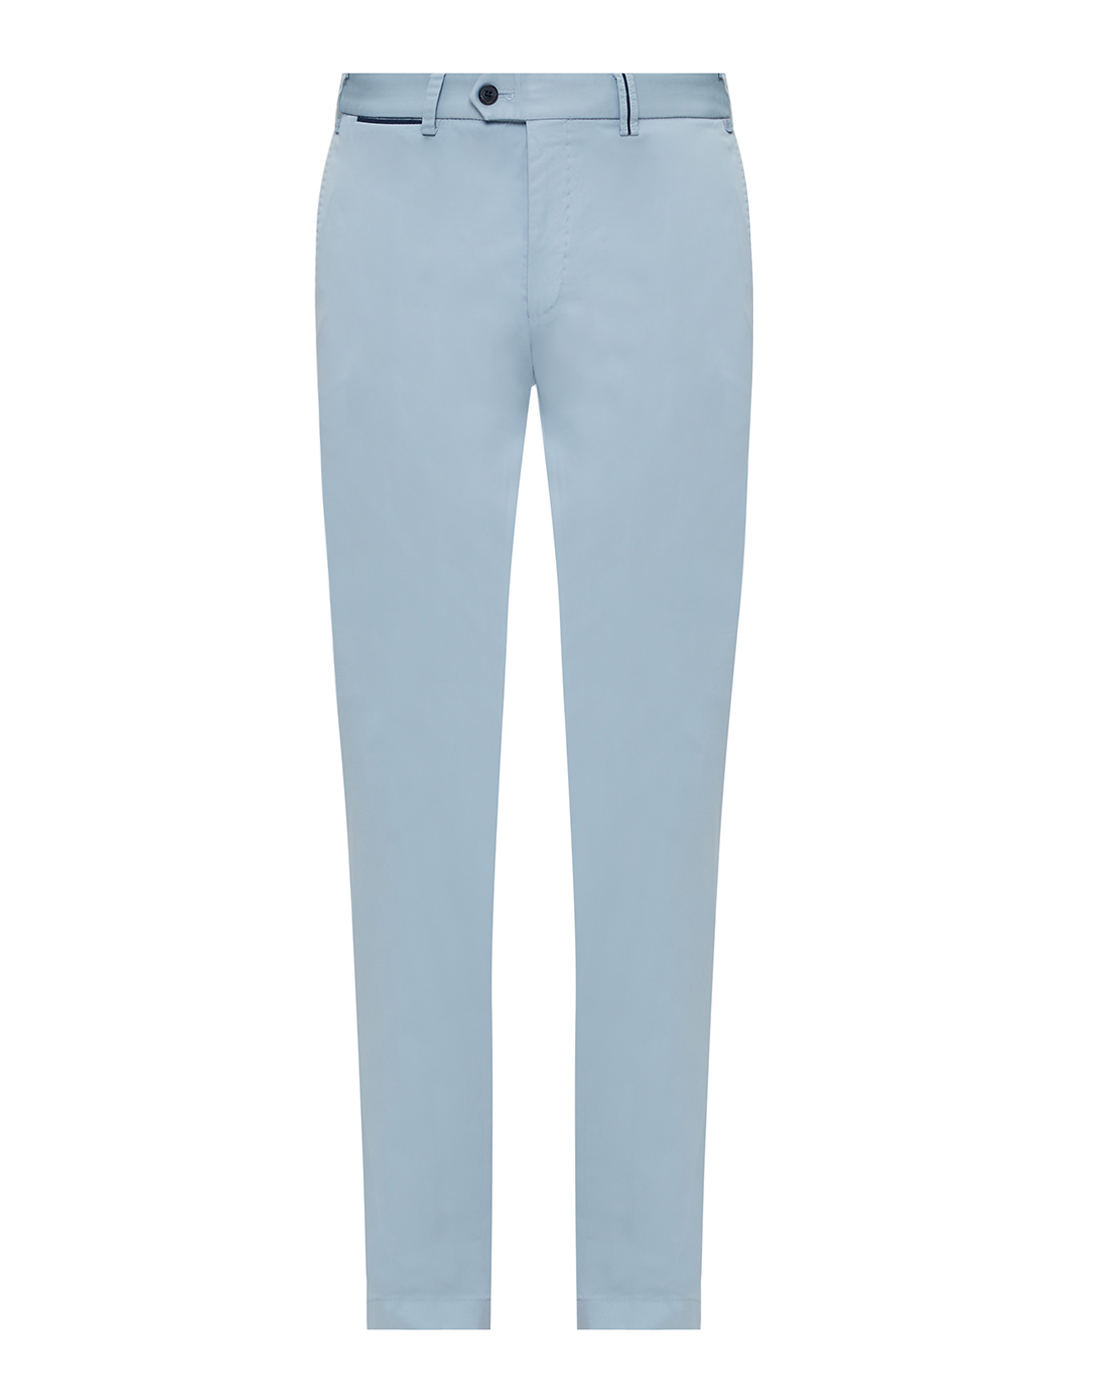 Мужские голубые брюки Hiltl  S73295 48 53000-1